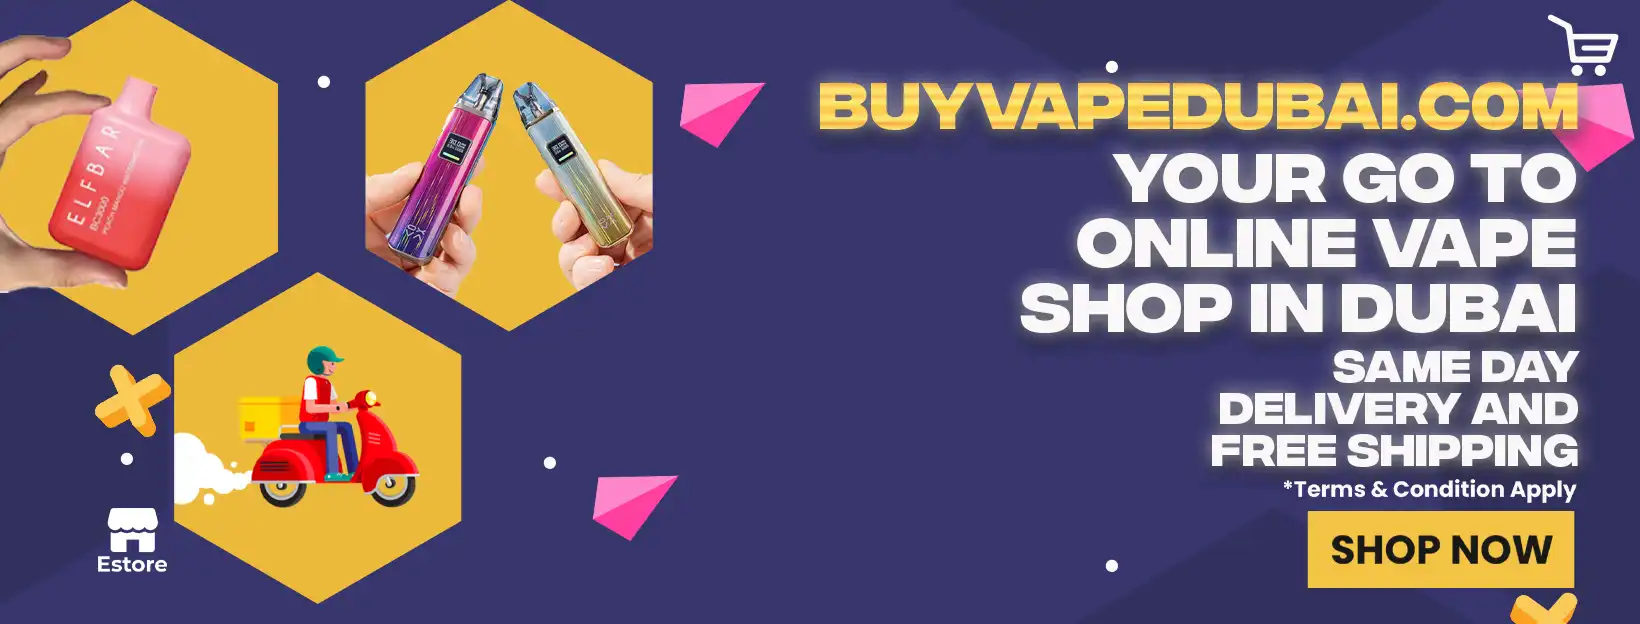 Online Vape Shop in Dubai: Buy Vape Dubai